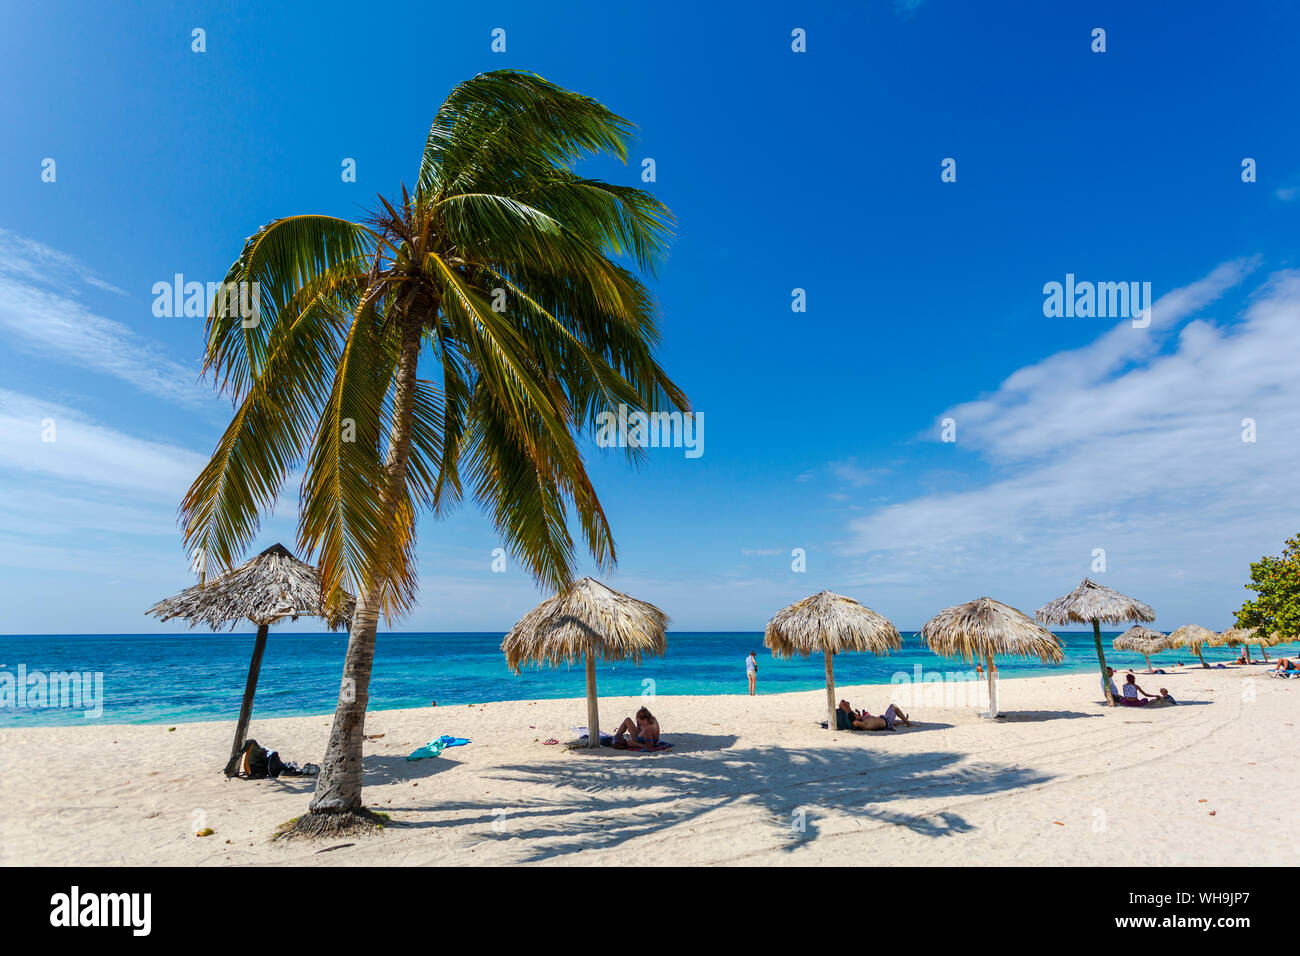 Palmen und Sonnenschirme am Strand Playa Ancon in der Nähe von Trinidad, Trinidad, Kuba, Karibik, Karibik, Zentral- und Lateinamerika Stockfoto